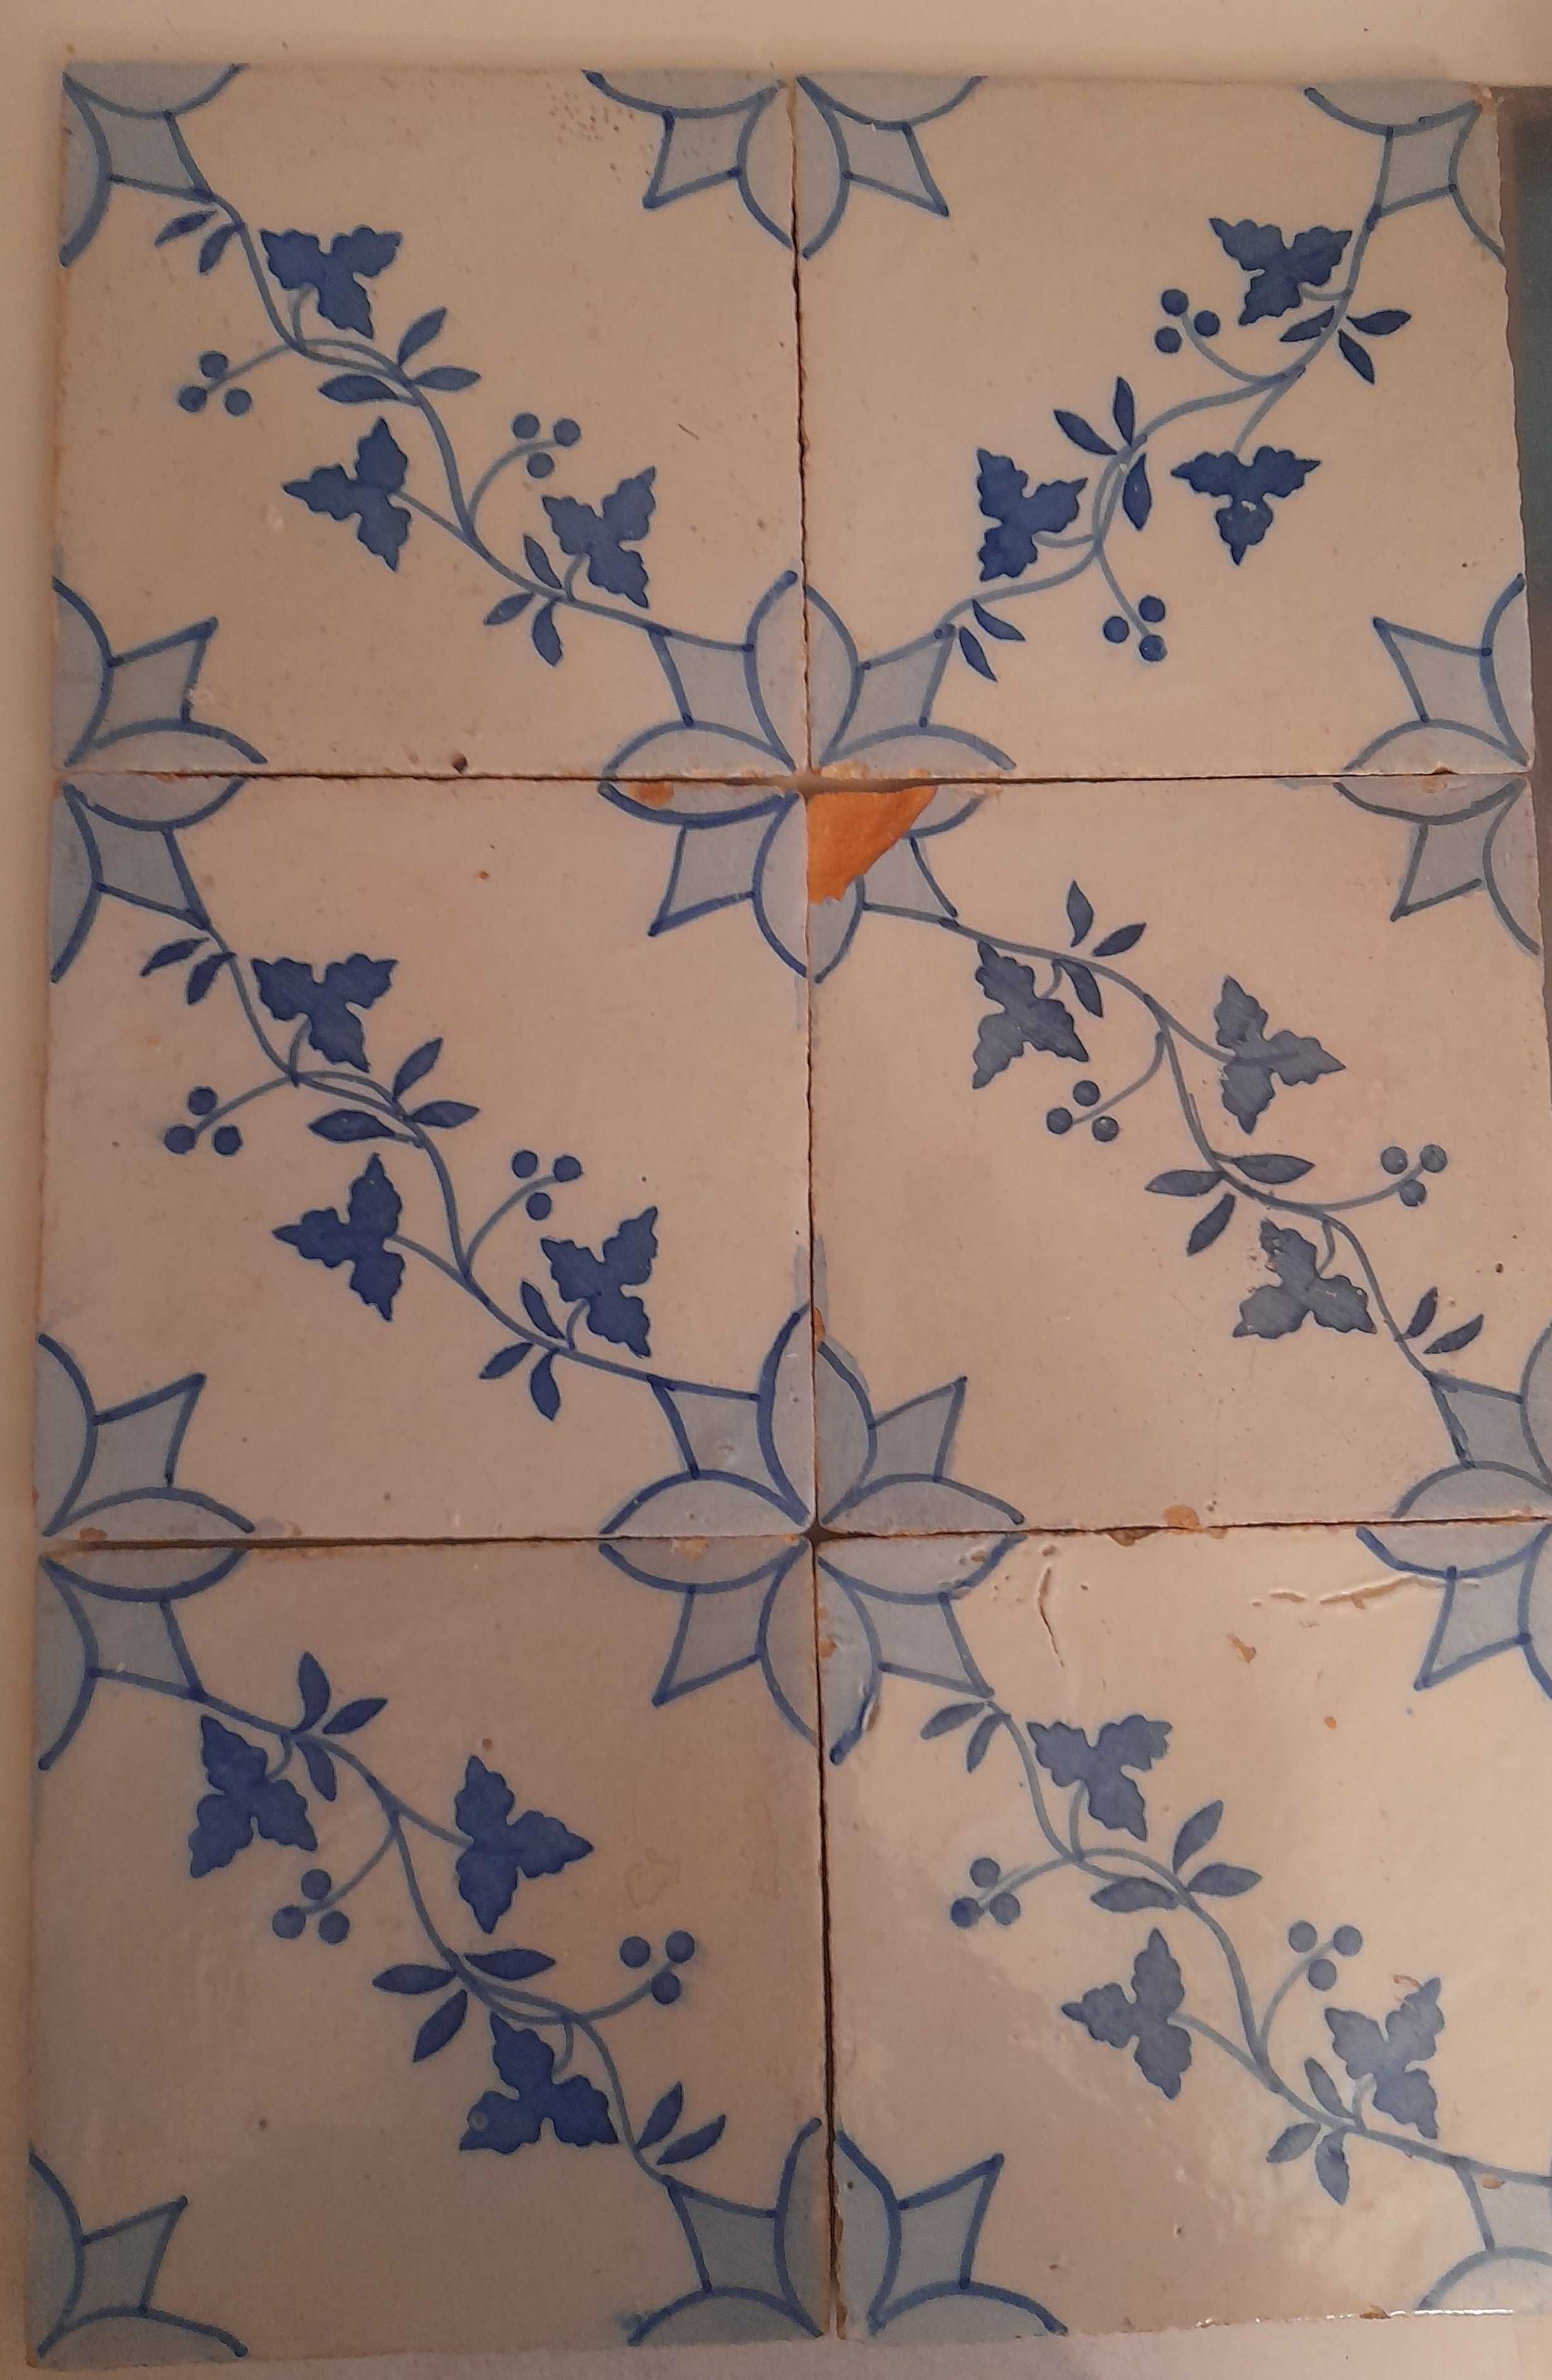 6 azulejos pombalinos seculo XIX